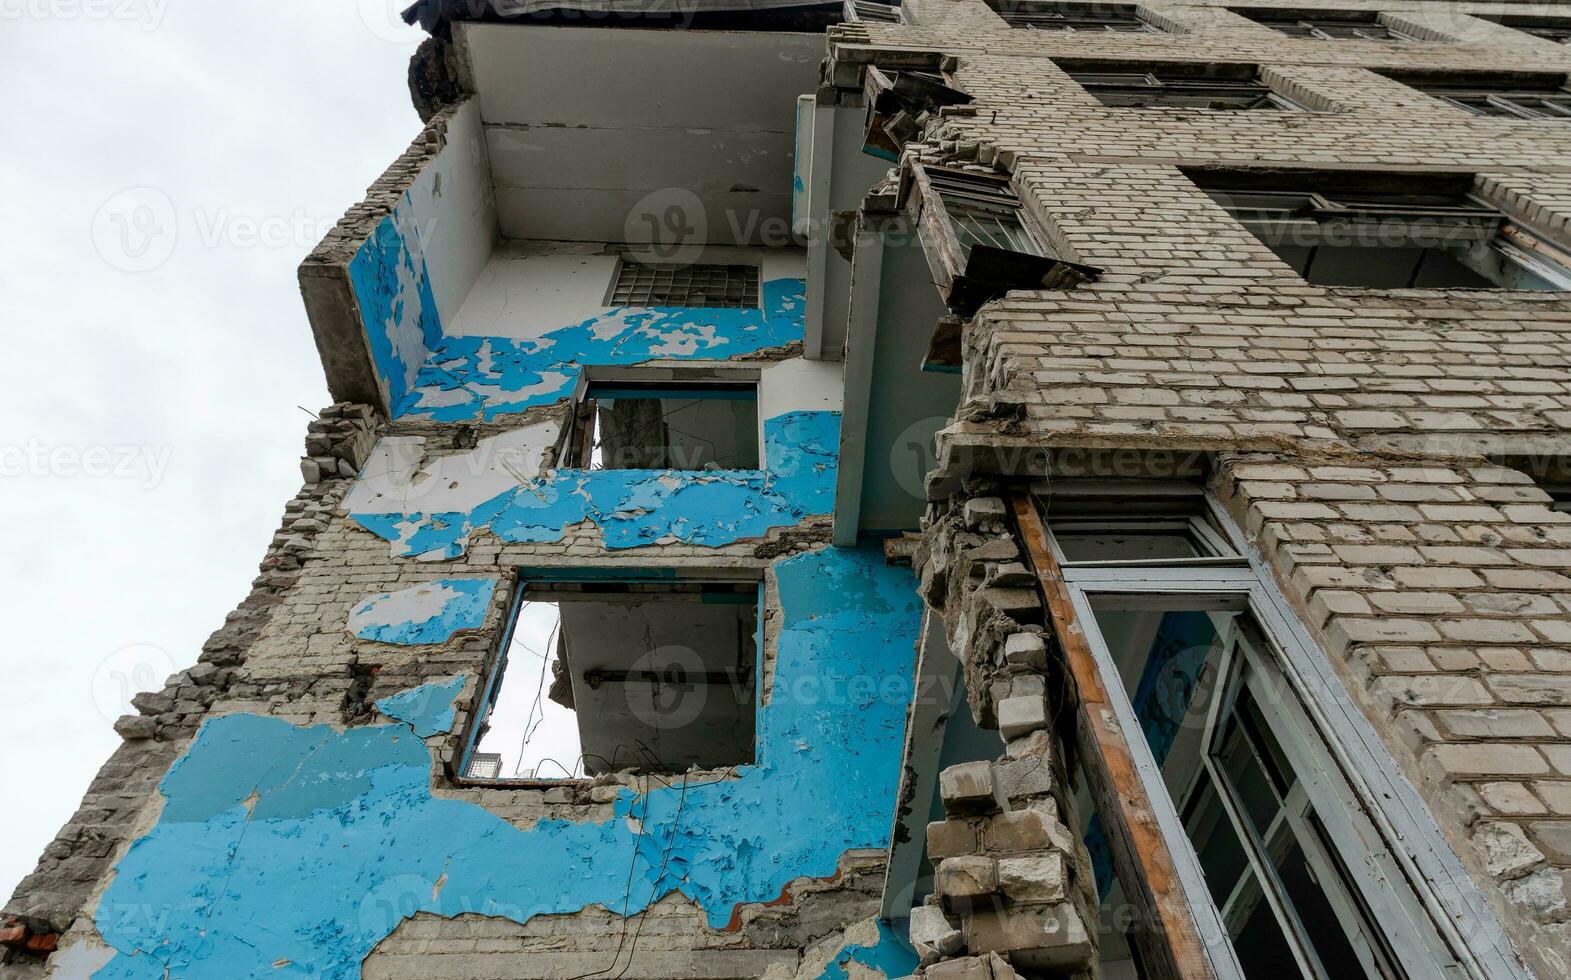 destroyed school building in Ukraine photo